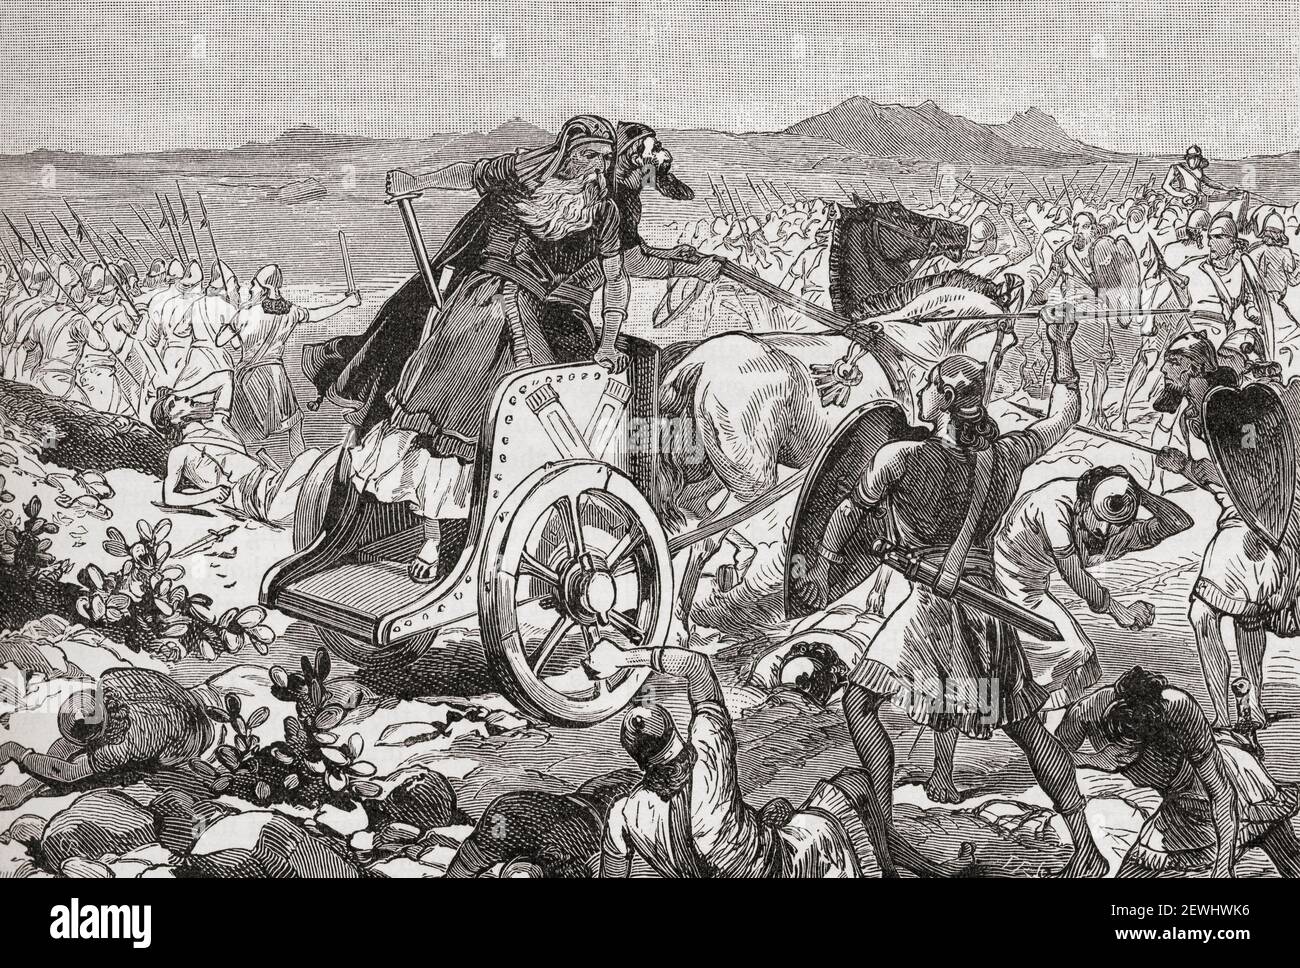 Die Niederlage Adonisedeks während der israelitischen Invasion Kanaans. Adonisedek, König von Jerusalem. Aus Cassells Universal History, veröffentlicht 1888. Stockfoto